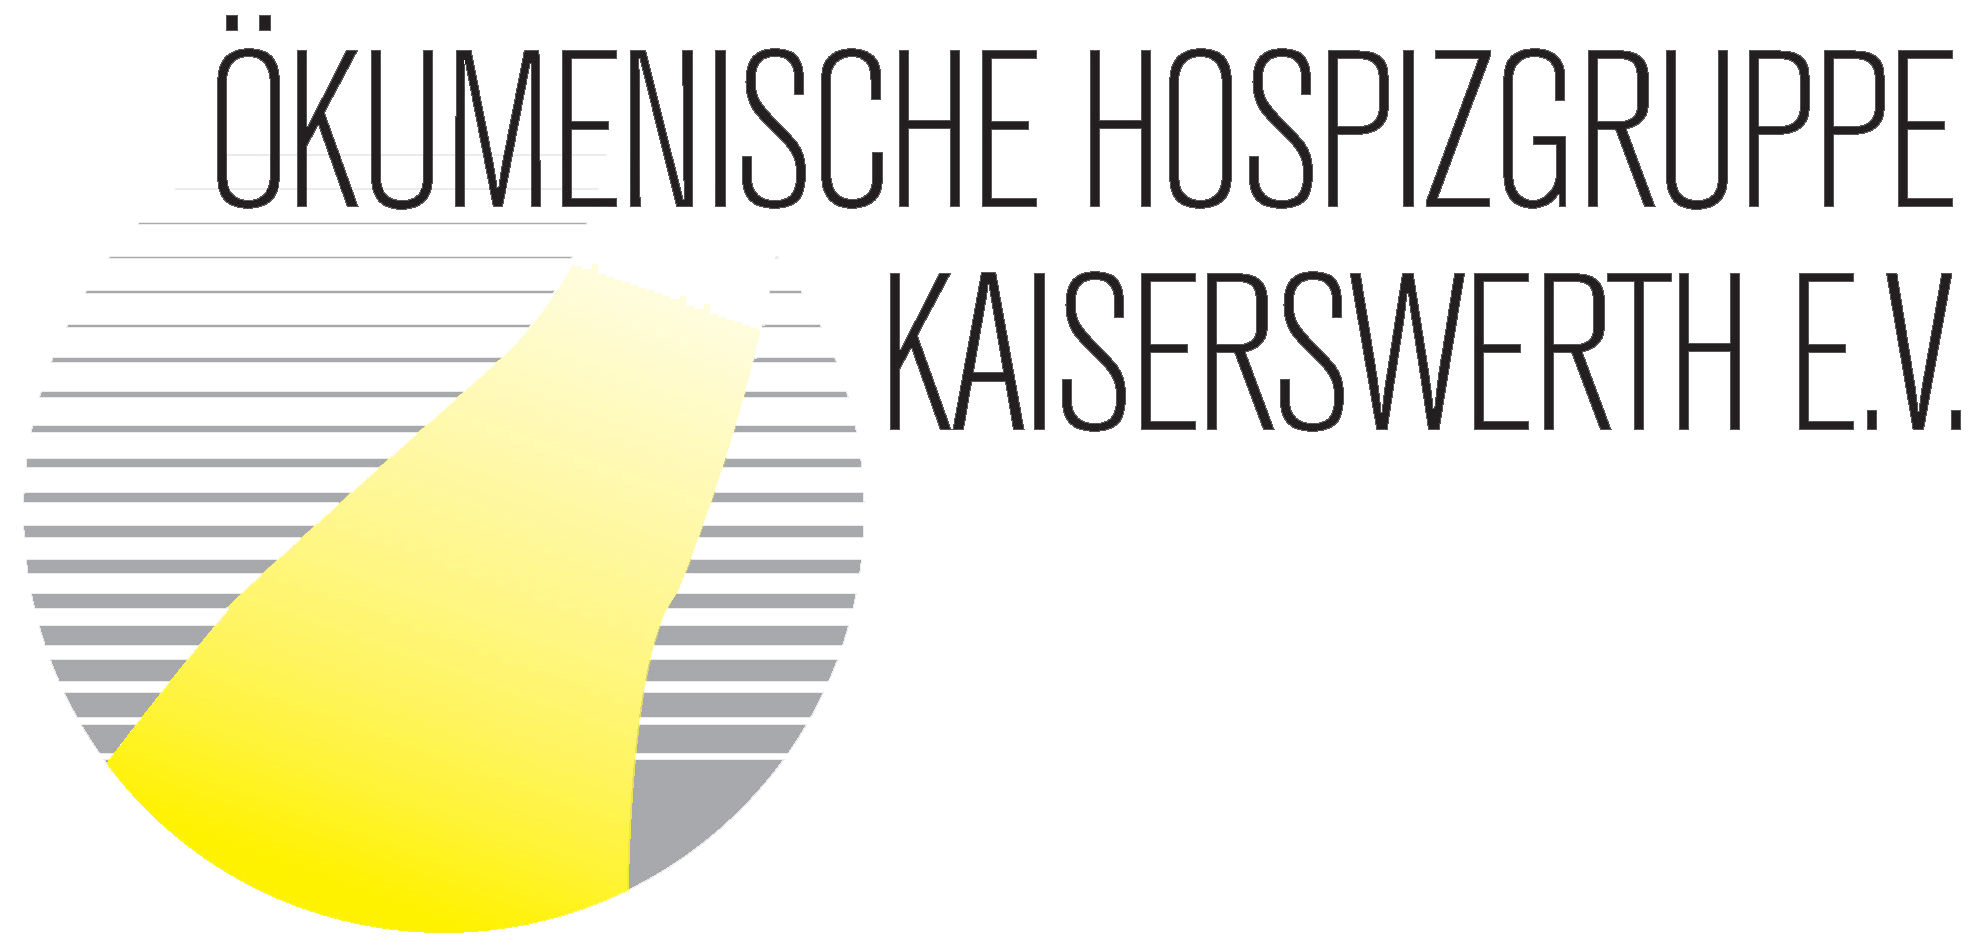 Ökumenische Hospizguppe Kaiserswerth e.V.